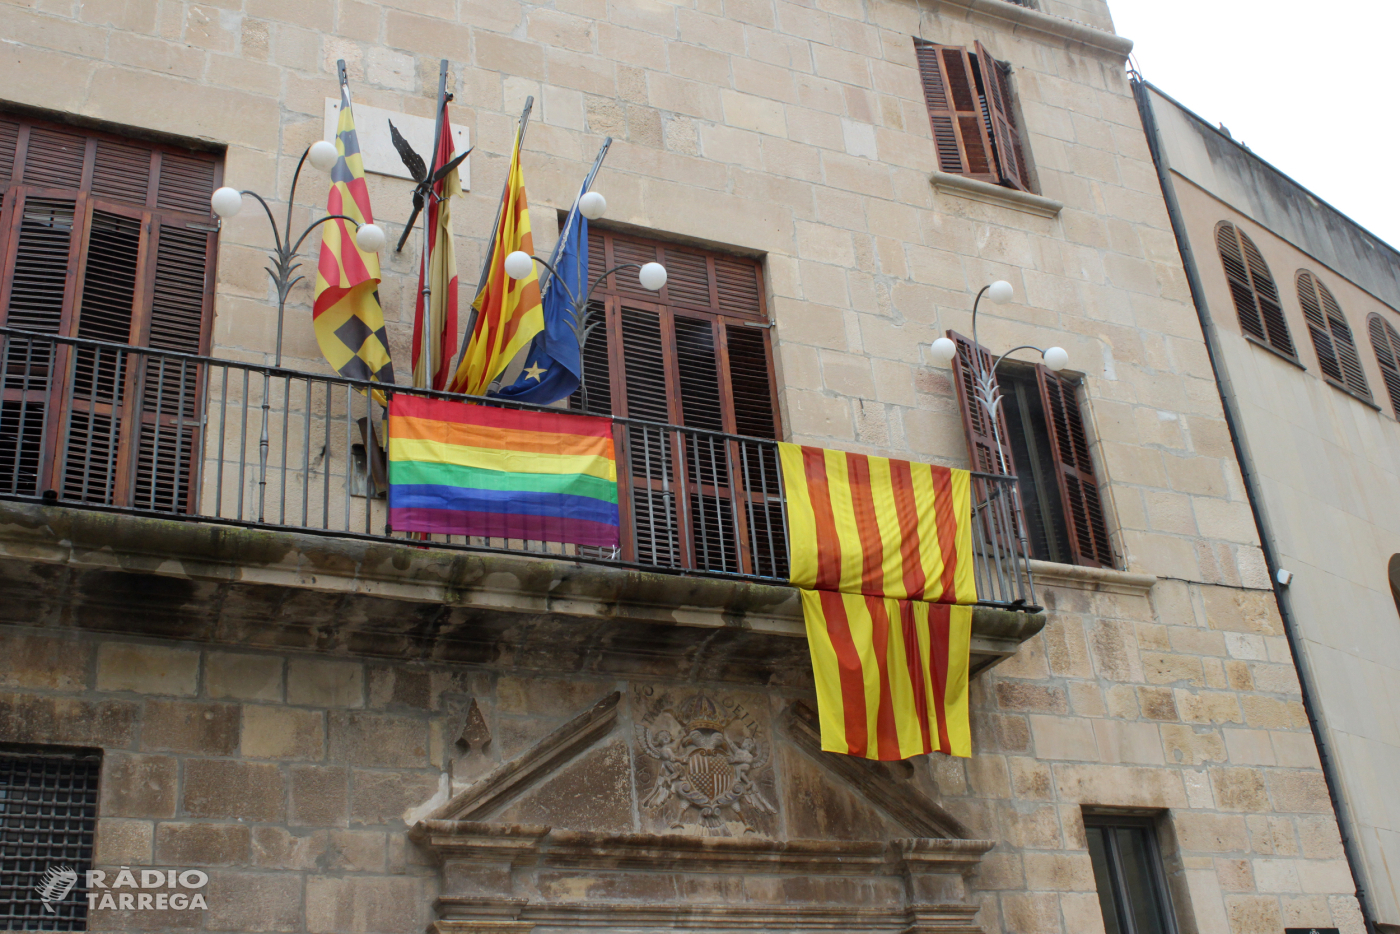 L'Ajuntament de Tàrrega posa la bandera arc iris al balcó de la Casa Consistorial com a expressió de suport a la igualtat de tracte de les persones LGTBI